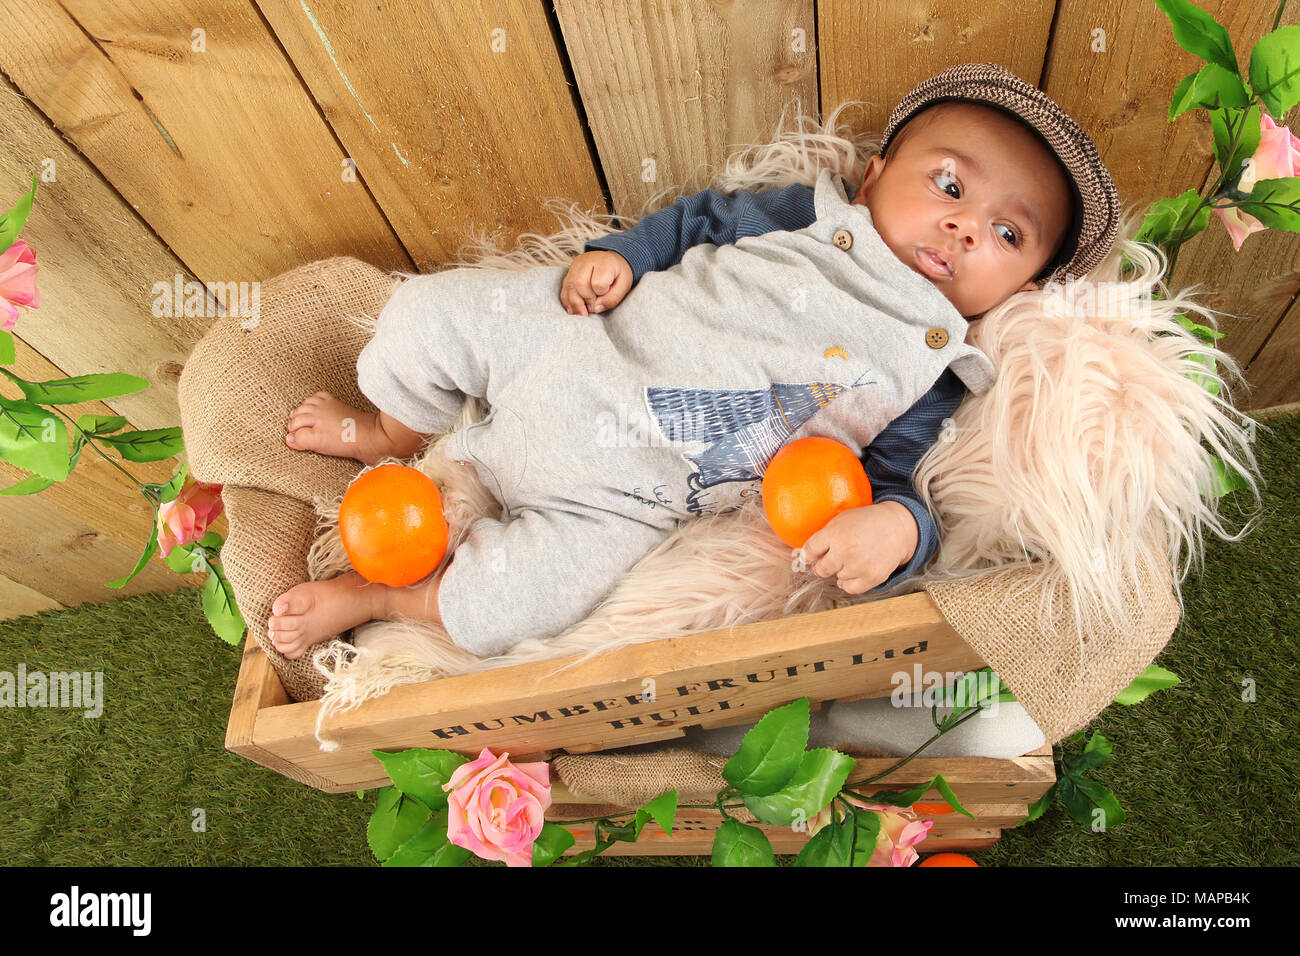 10 semanas de edad, etnia Baby Boy durmiendo en la caja de fruta Foto de stock